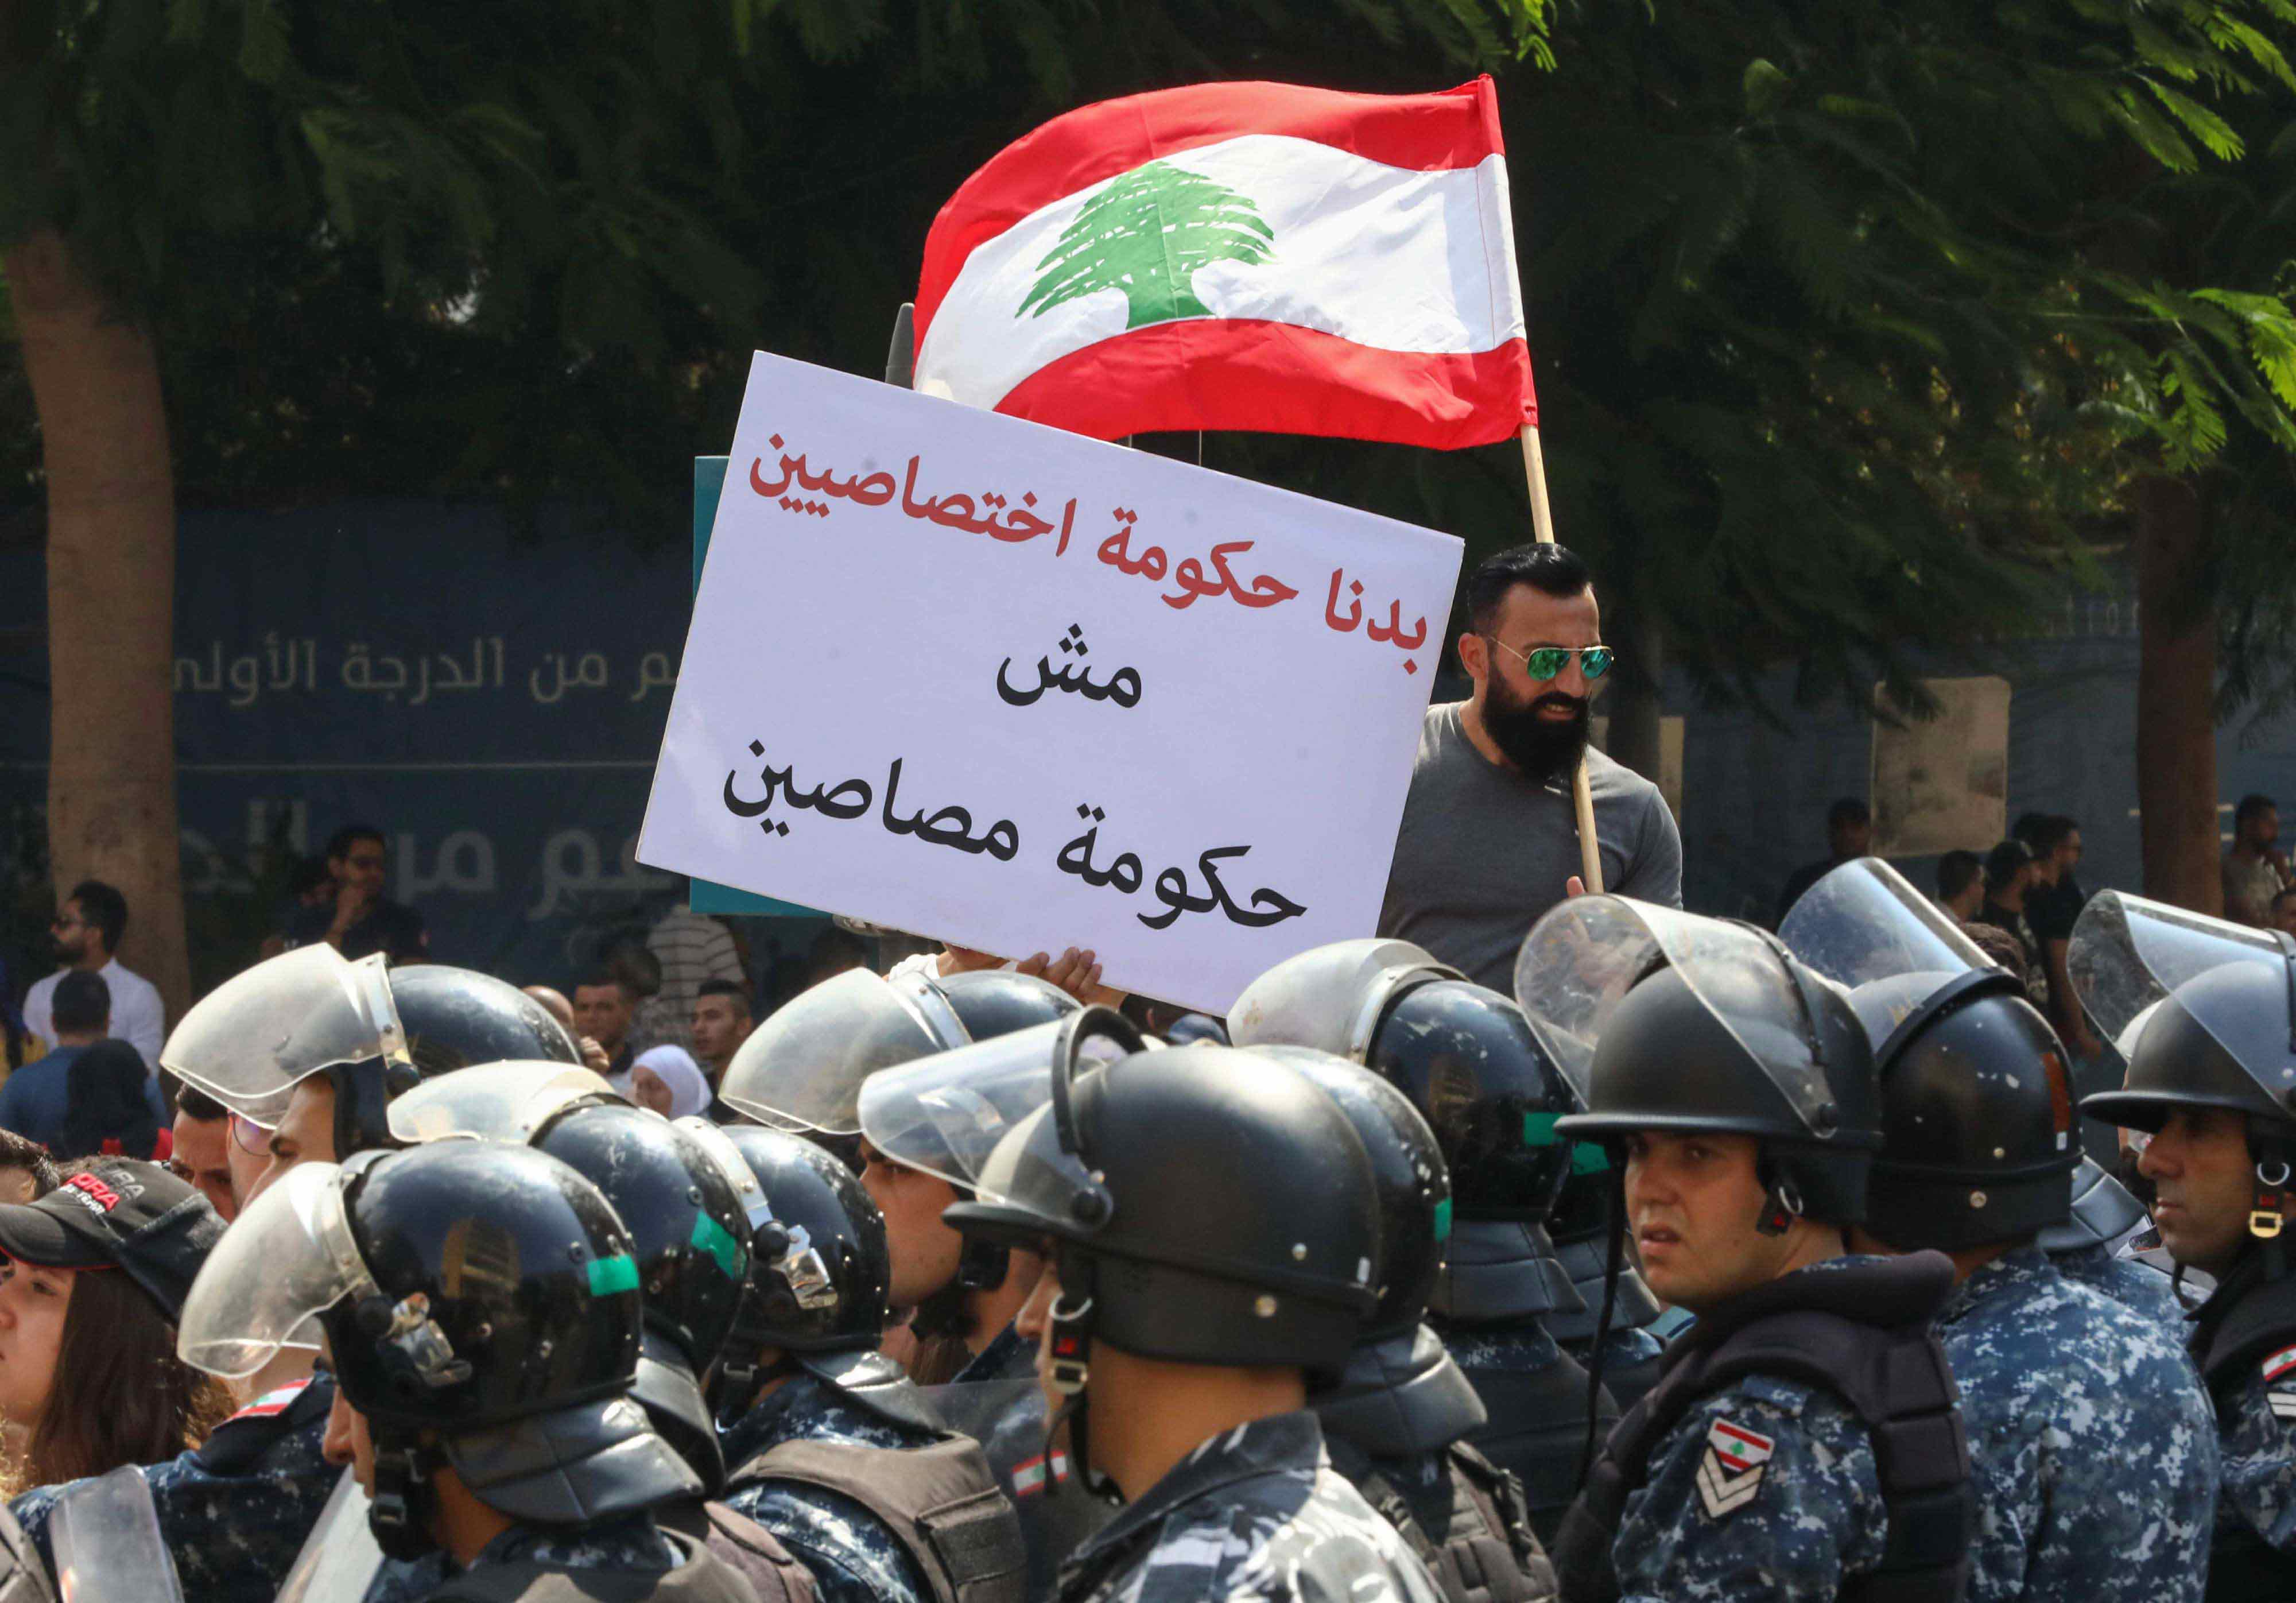 اللبنانيون يطالبون الحكومة بمحاسبة الفاسدين في مؤسساتها